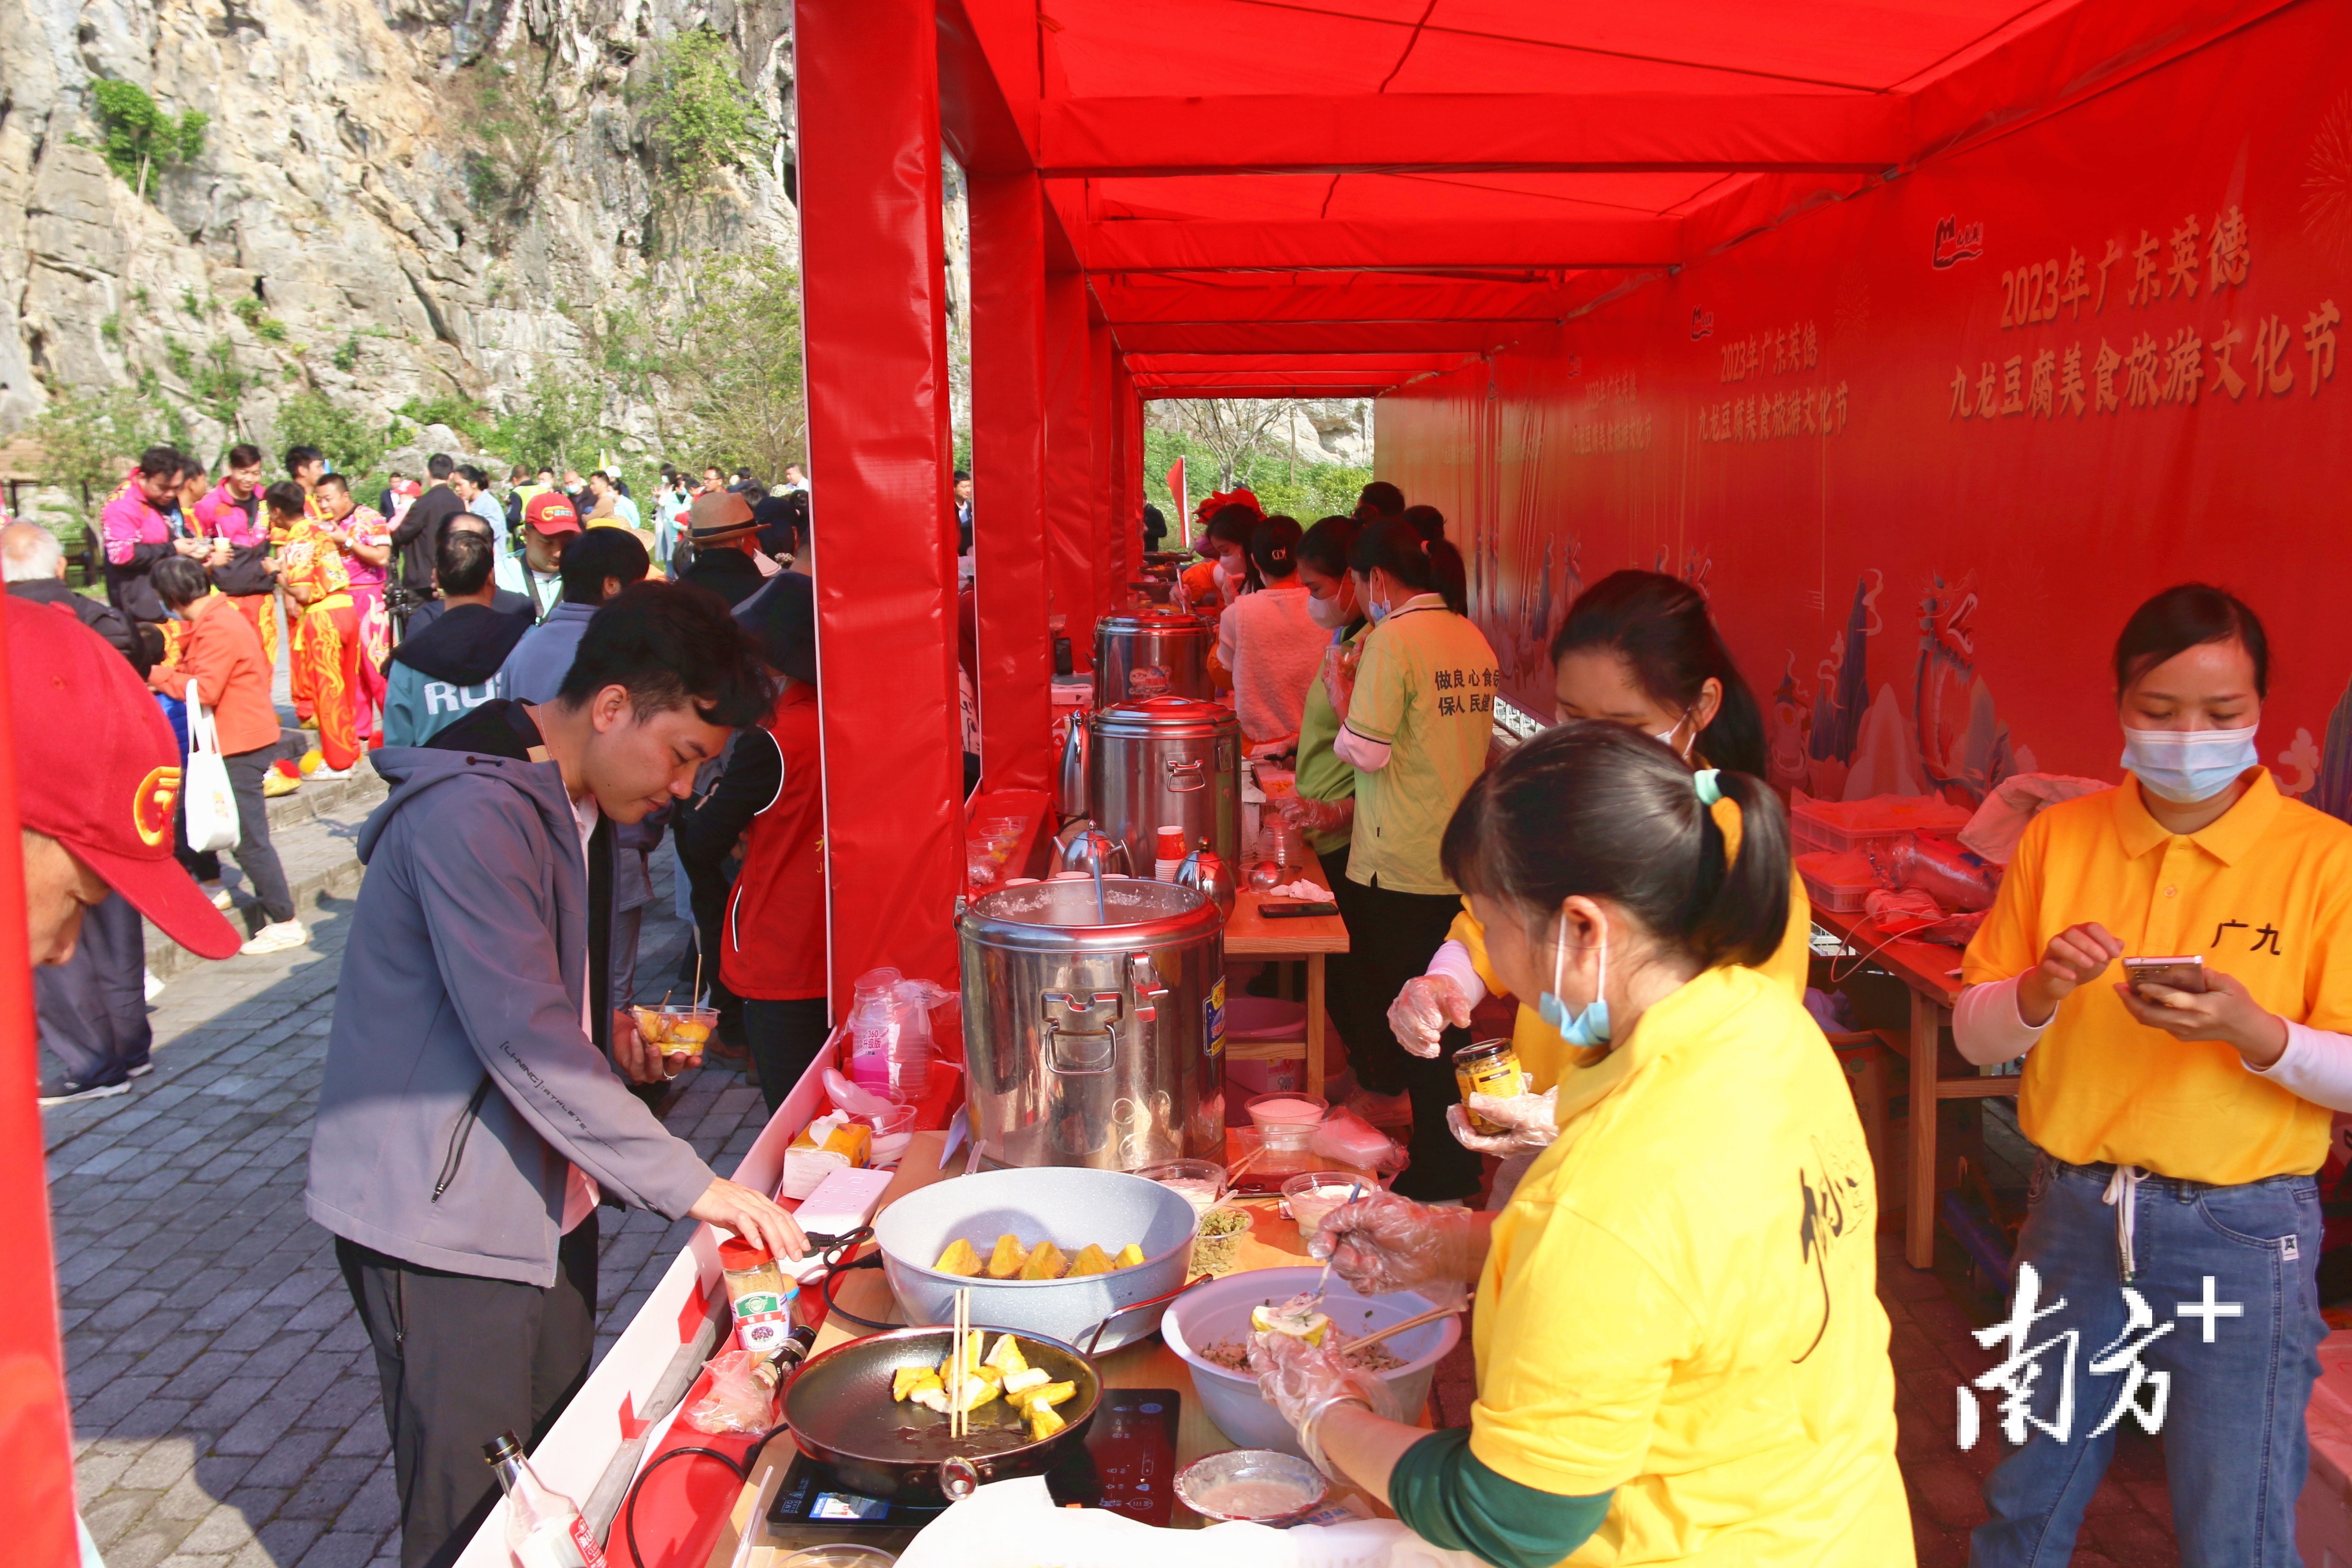 活动吸引了不少群众品尝九龙豆腐。陈咏怀 摄 